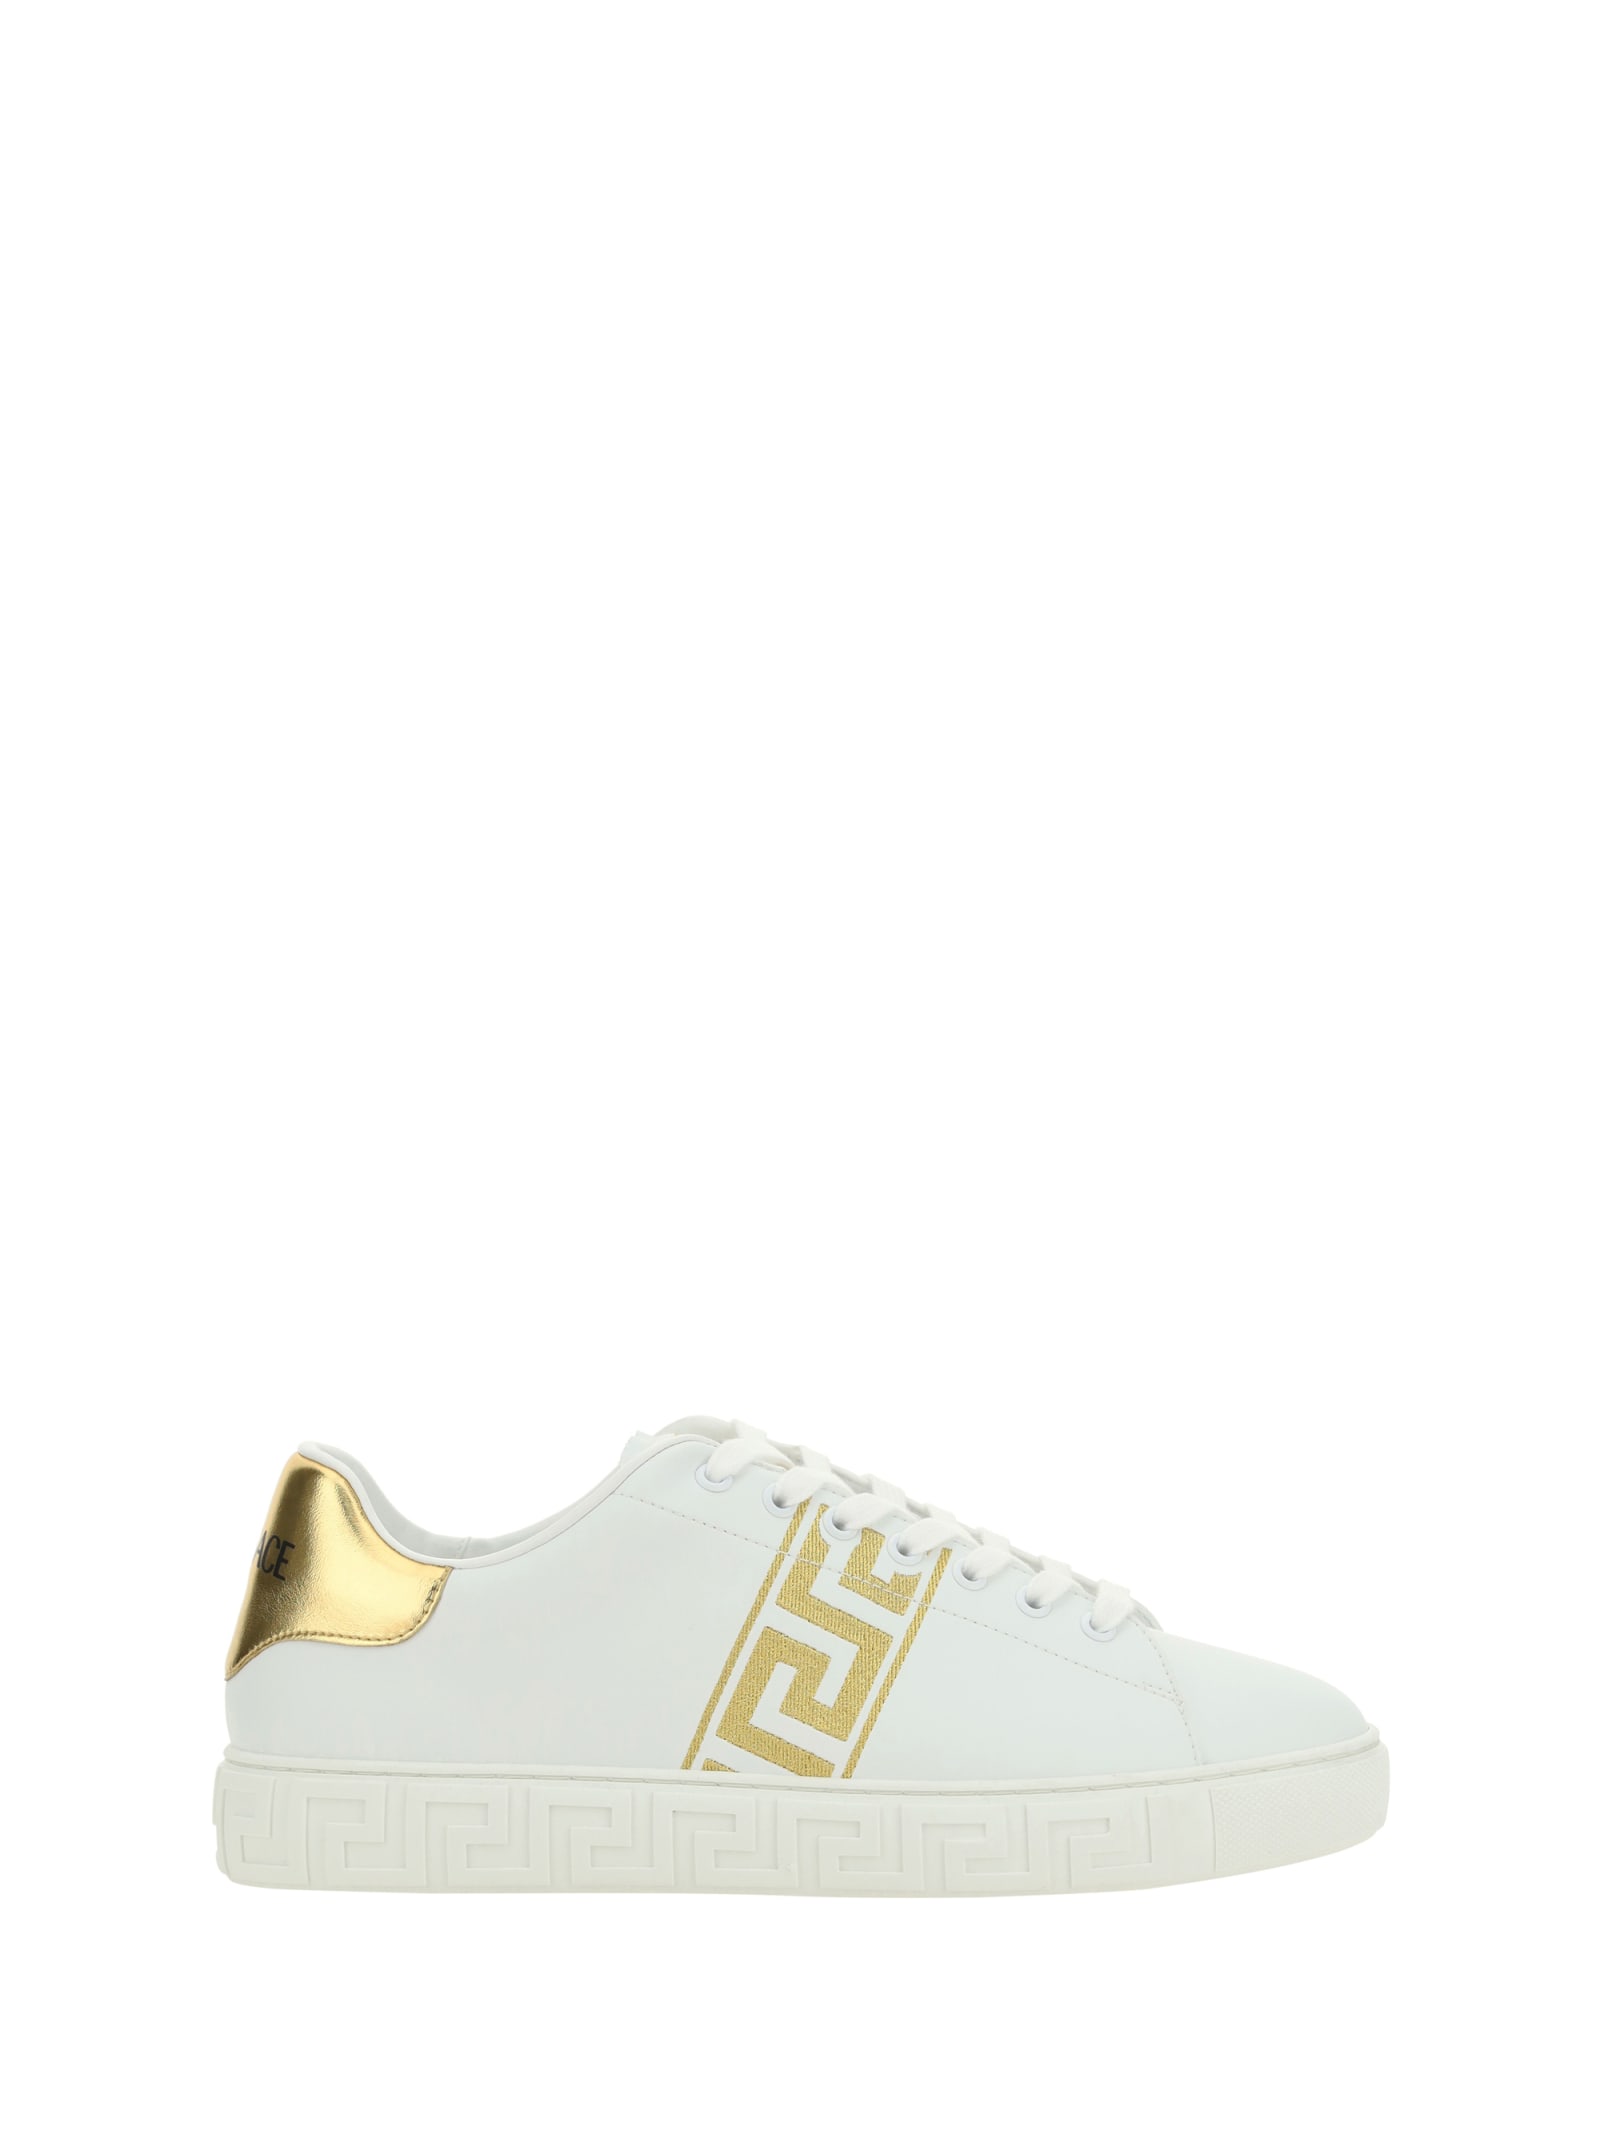 Shop Versace Low Top Sneakers In Golden